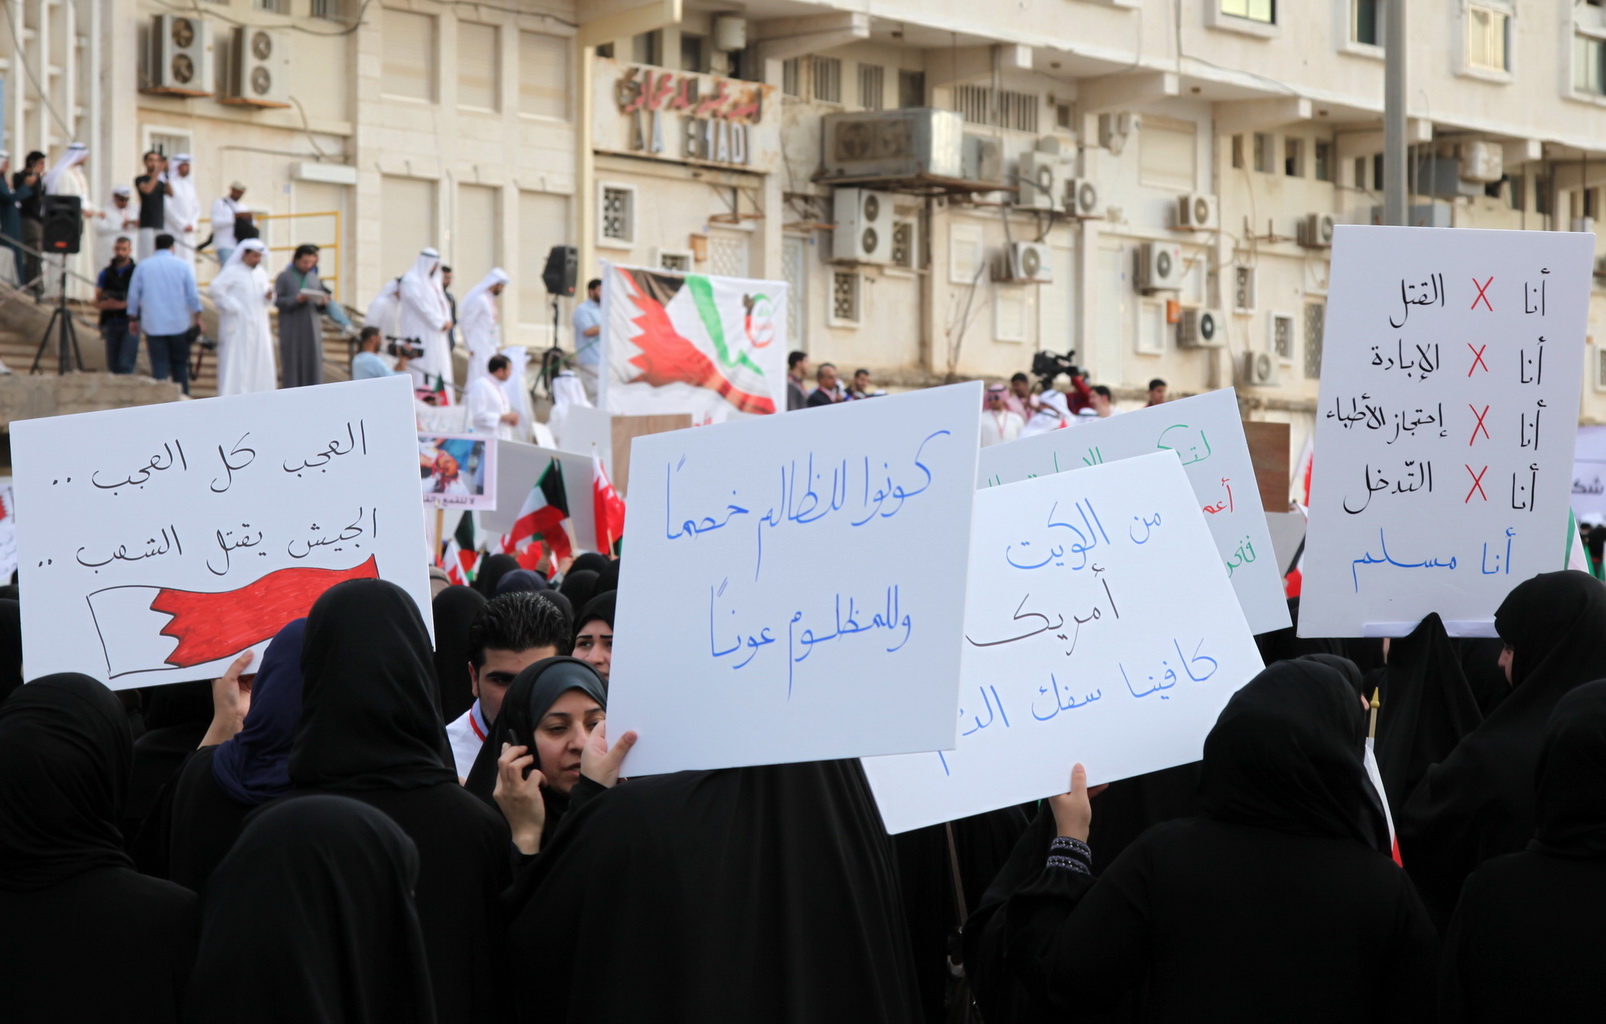 صورة البحرين تشهد تظاهرات سلمية واسعة واعتقالات تعسفية بينهم أطفال وامرأة